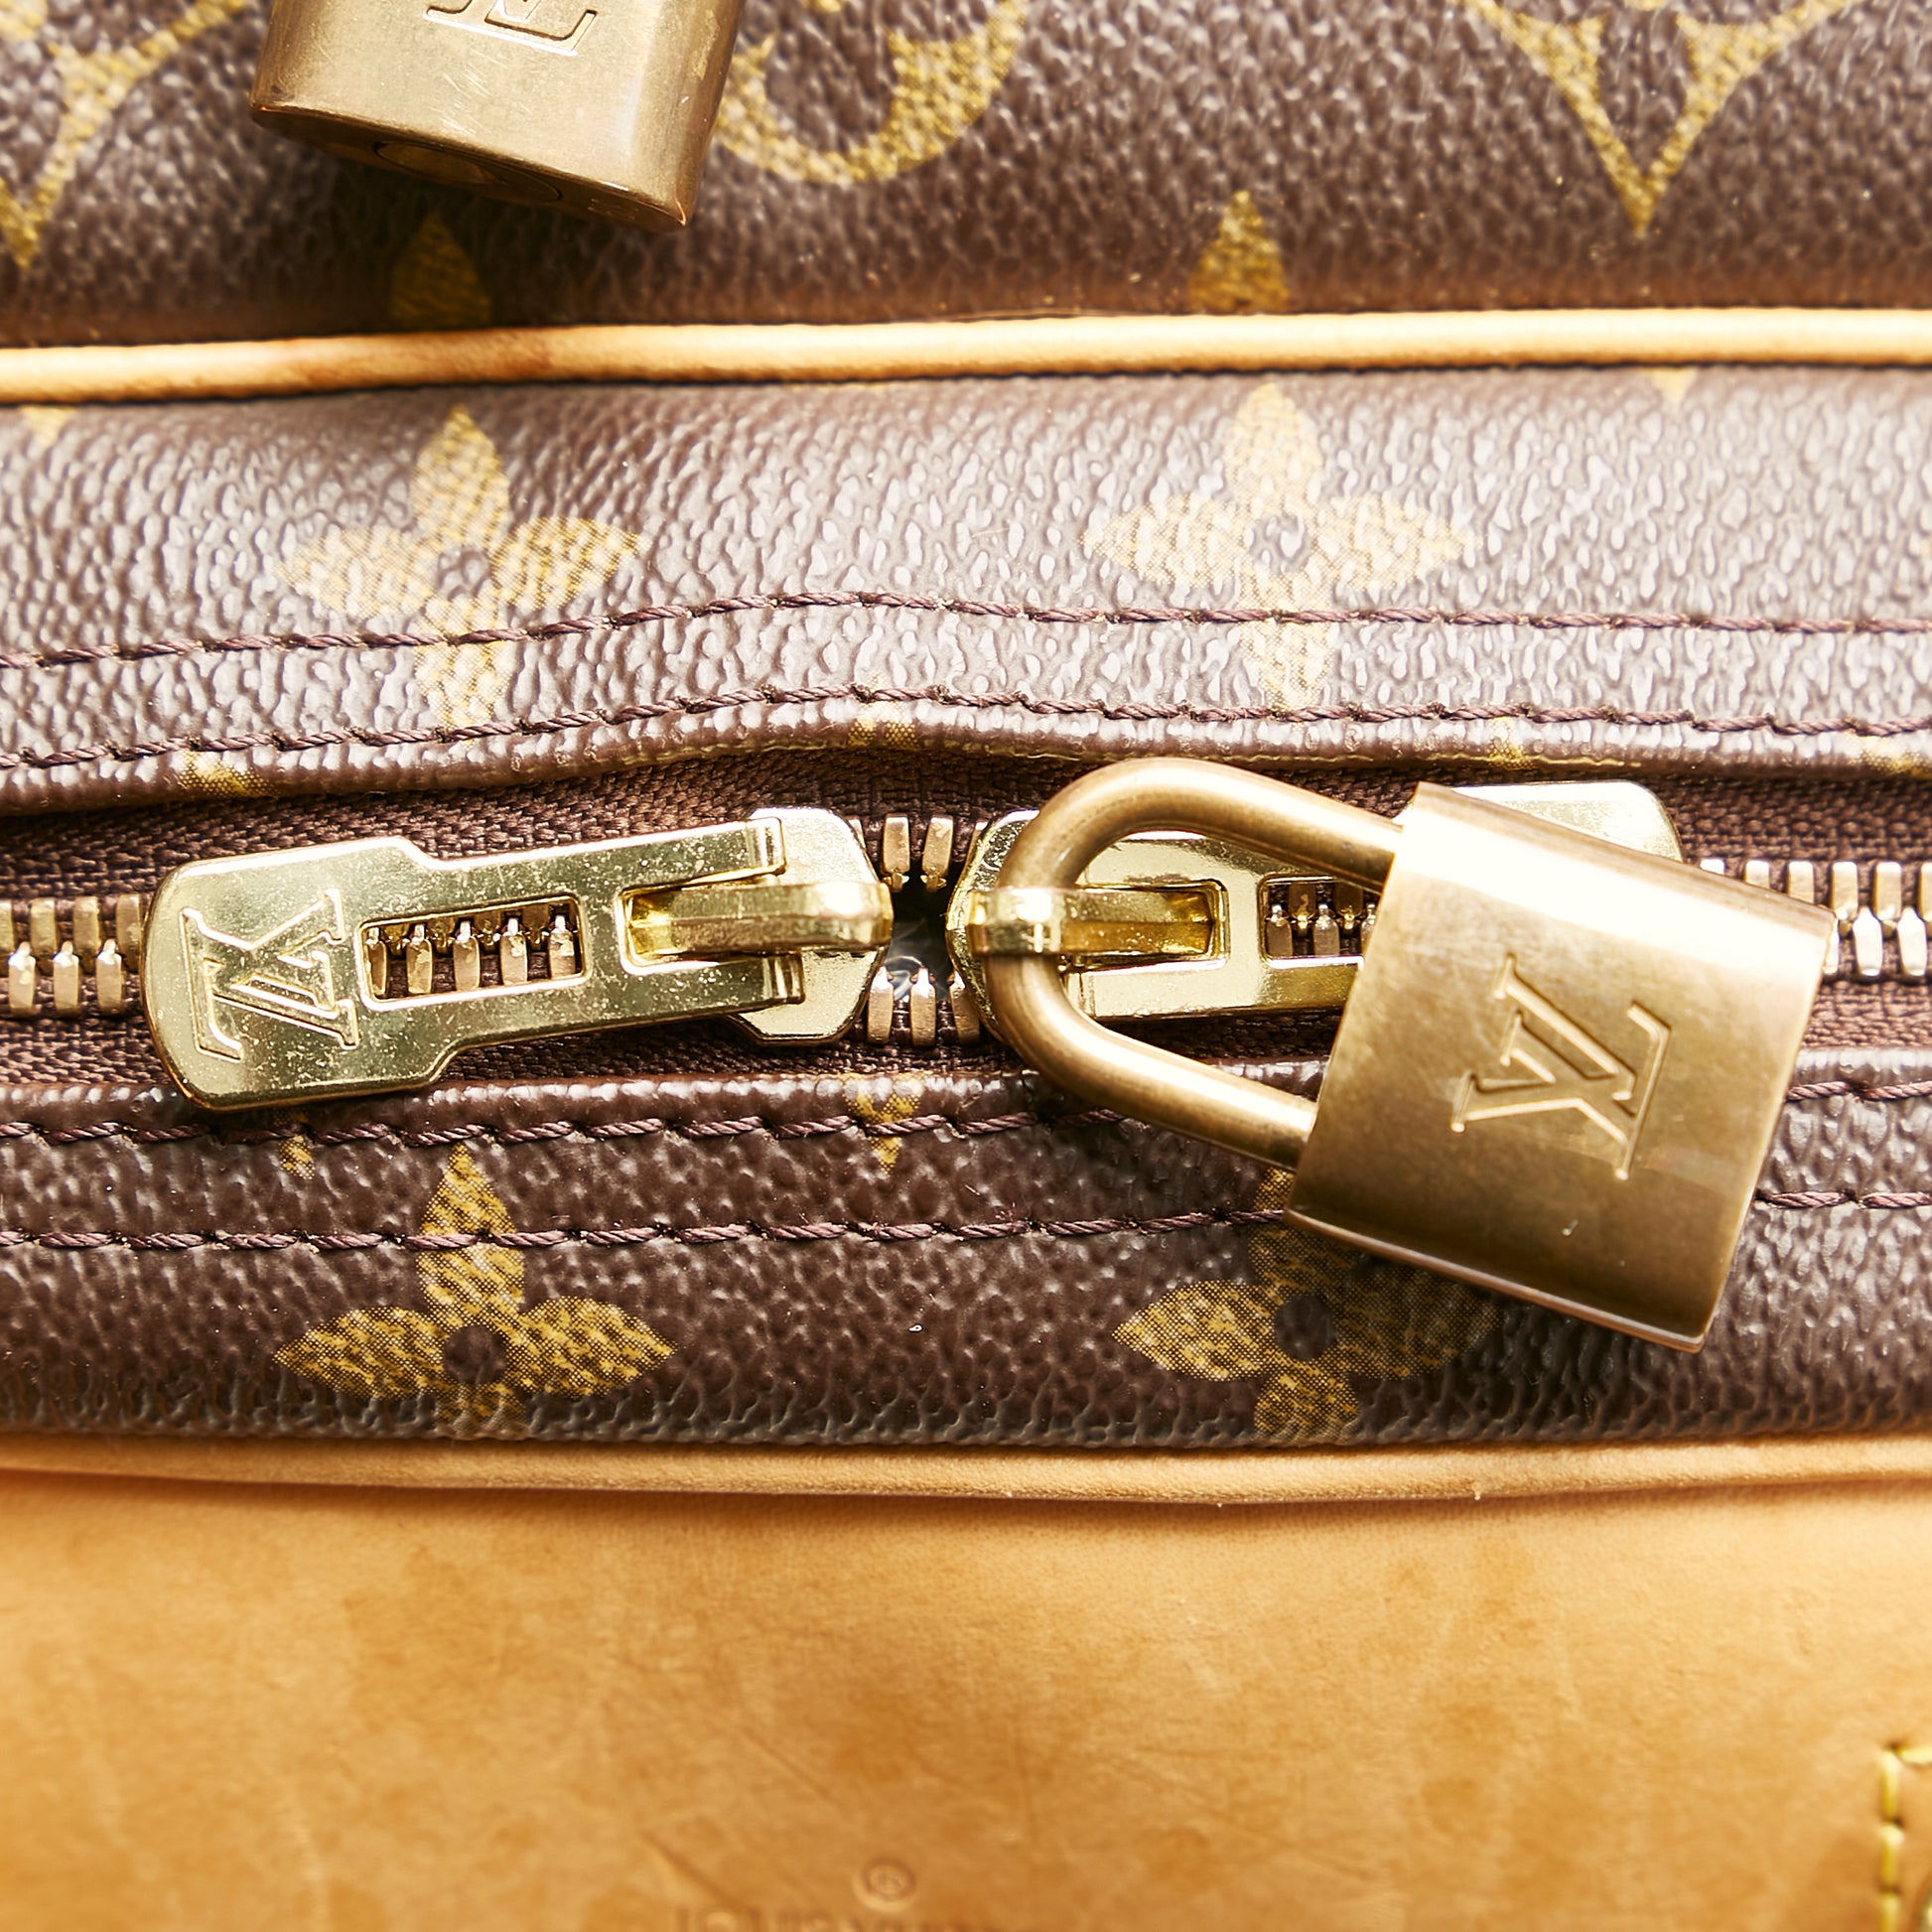 Louis Vuitton Alize Travel bag 373718